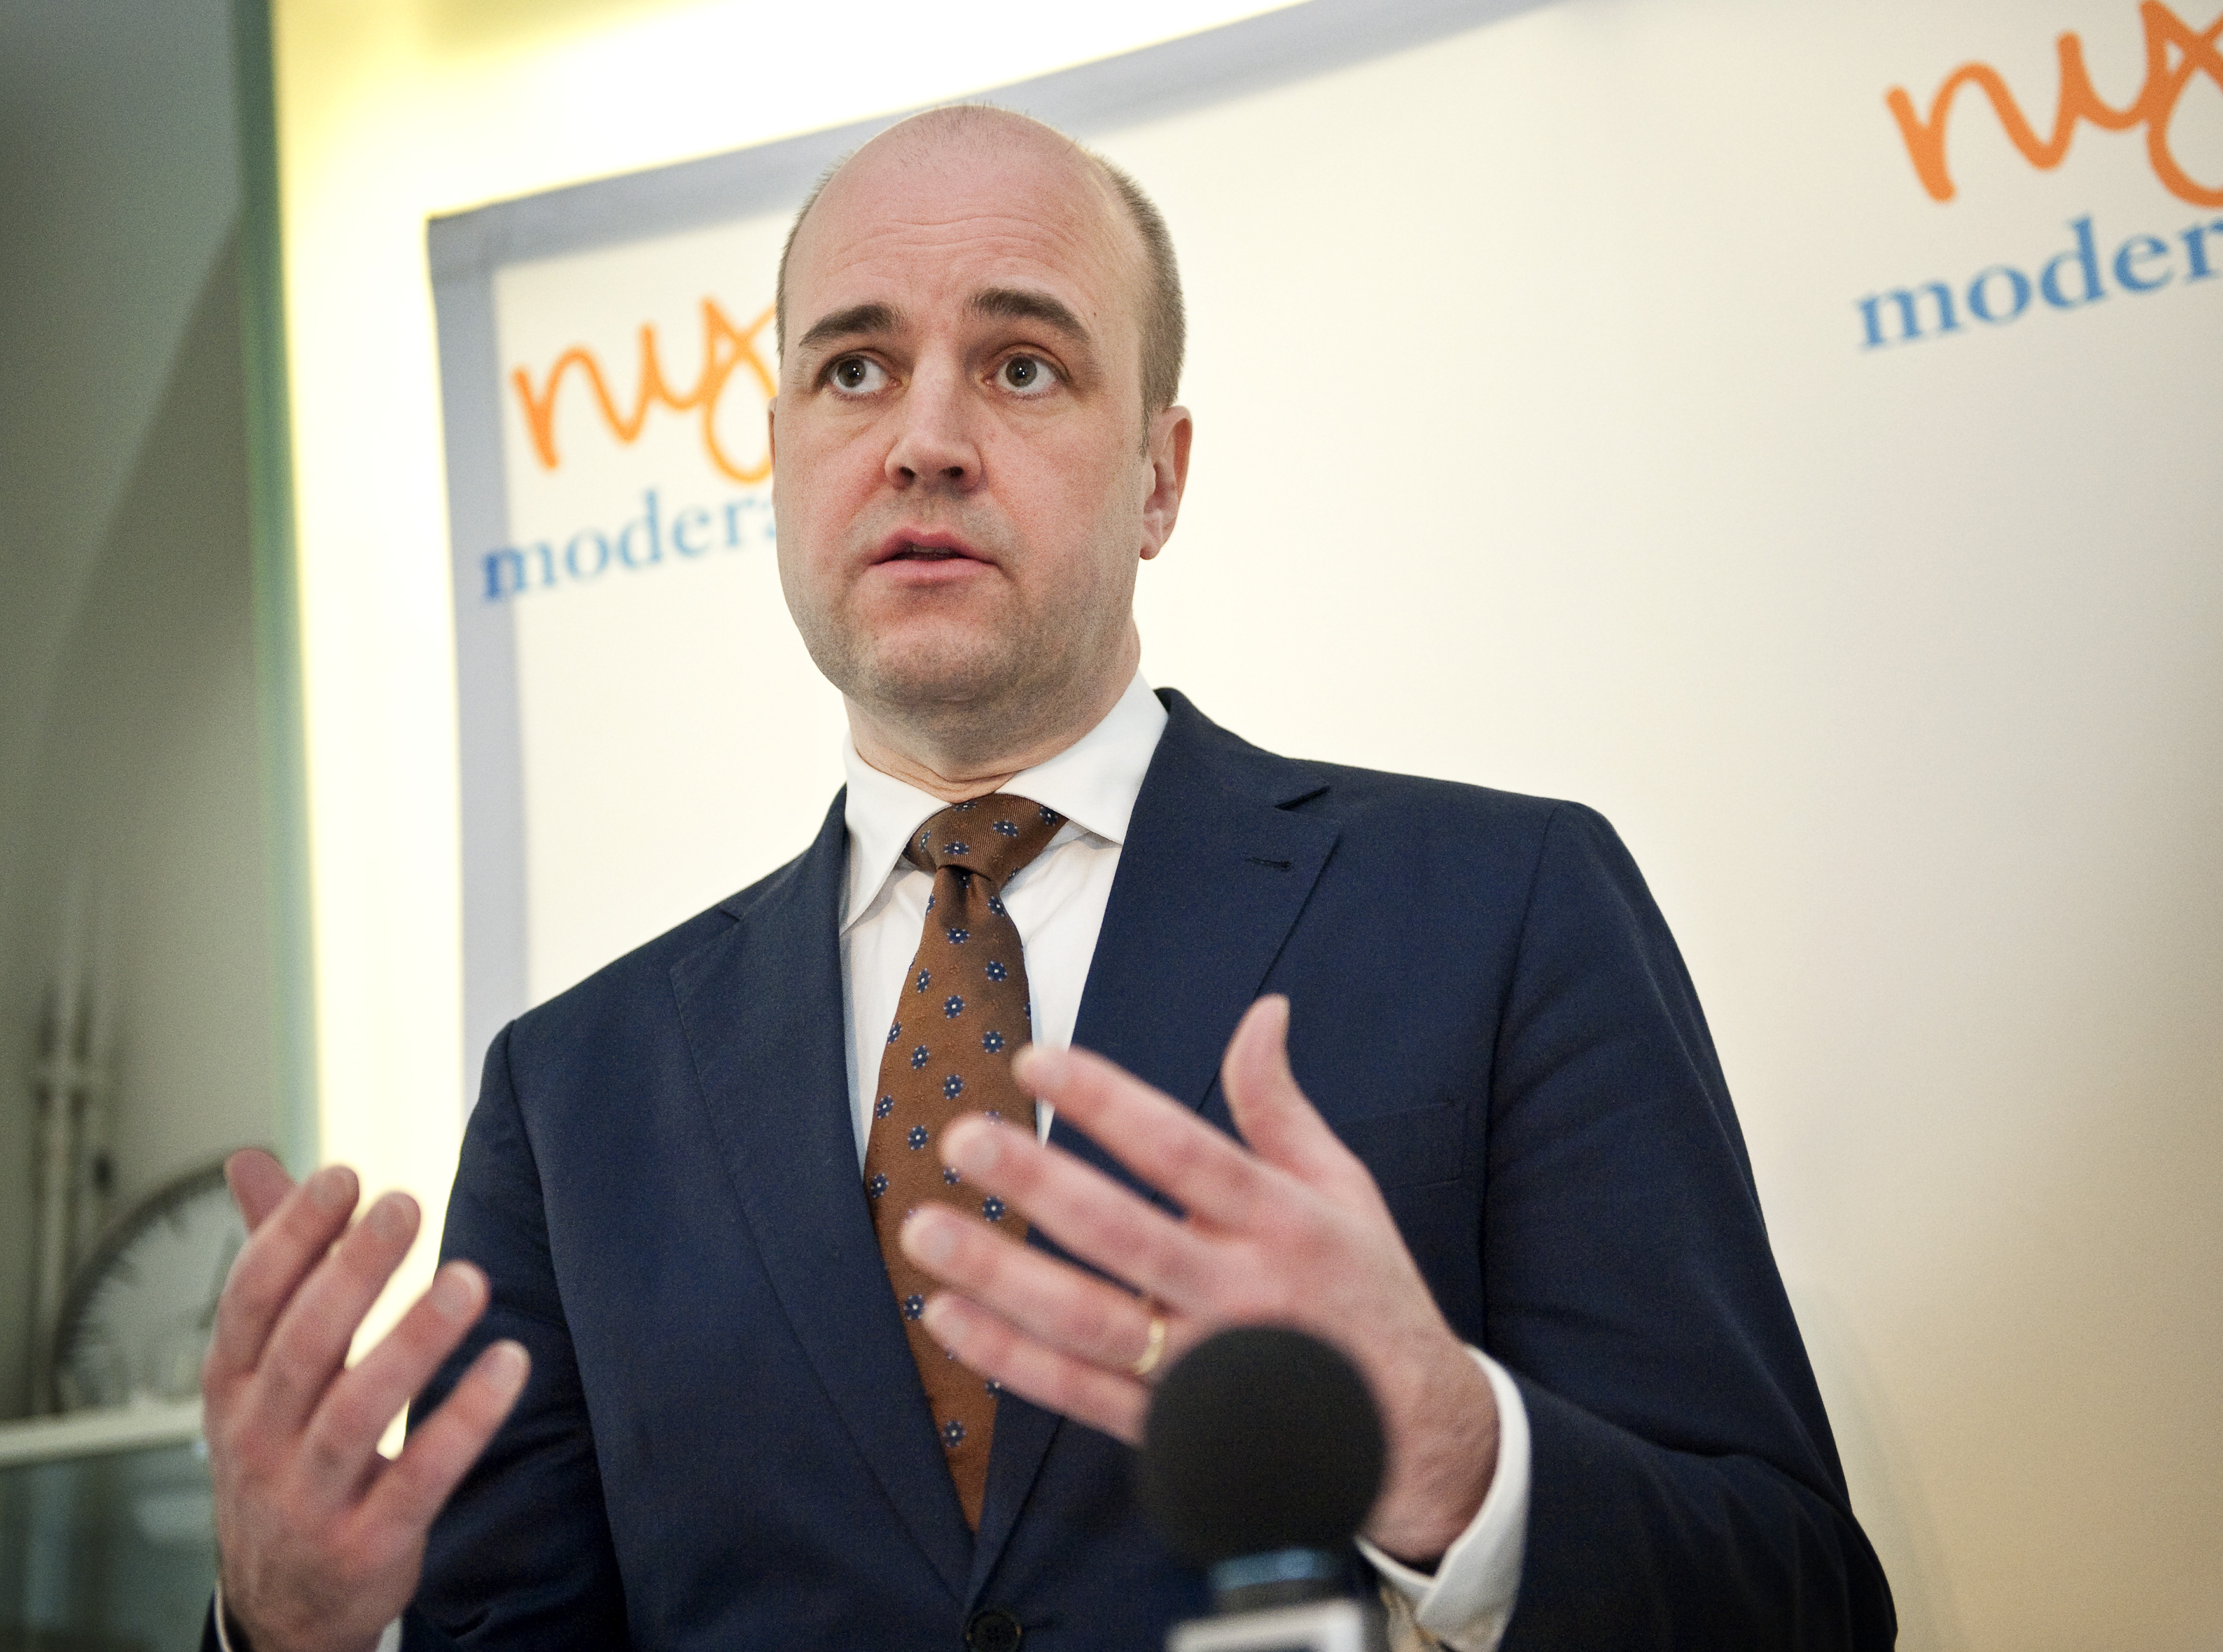 Kvotering, Pappaledighet, Jämställdhet, Föräldraförsäkringen, Riksdagsvalet 2010, Fredrik Reinfeldt